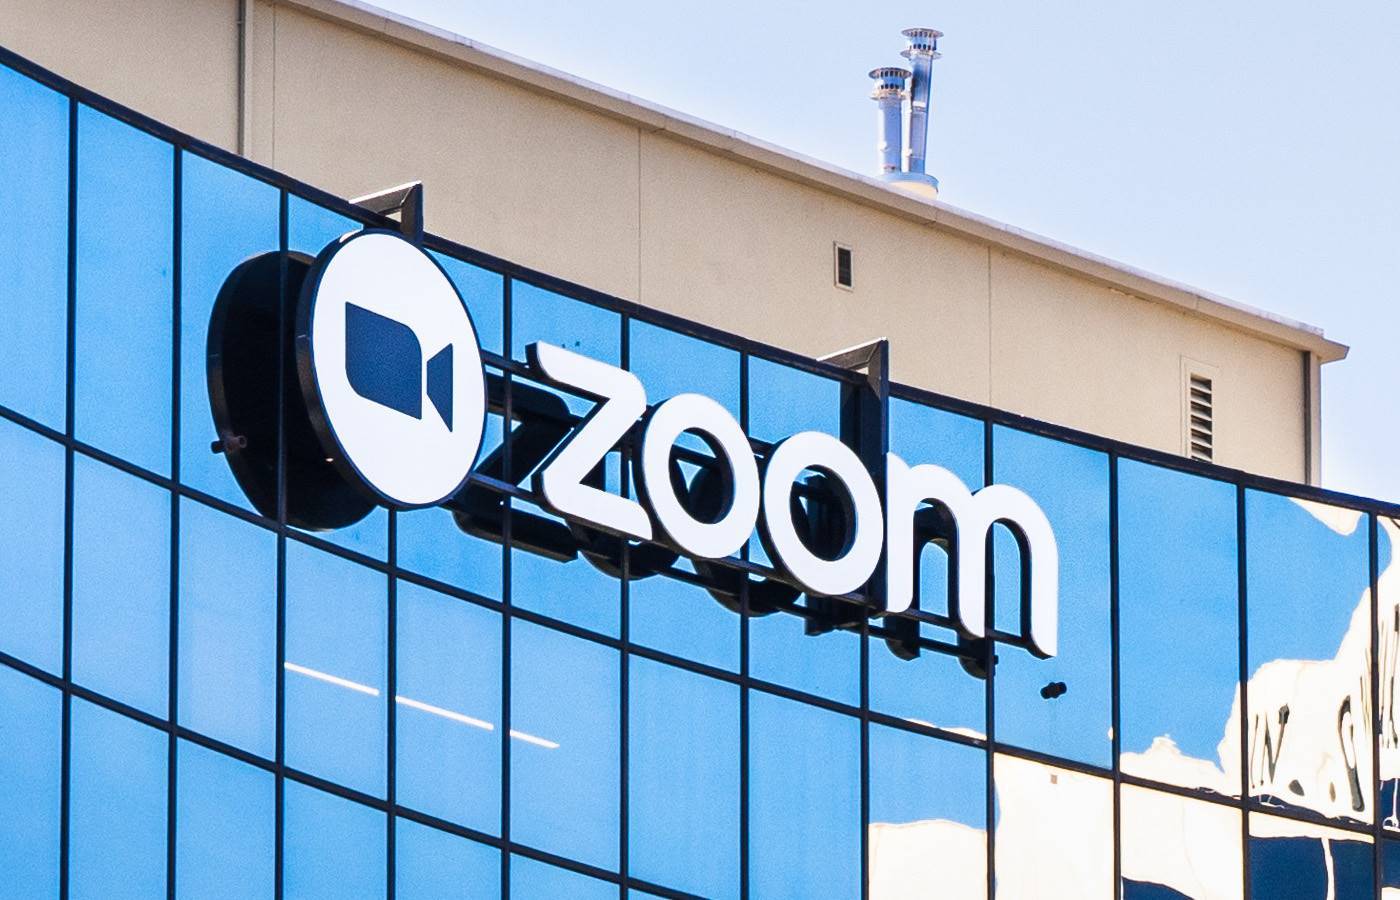 zoom stock price 2020